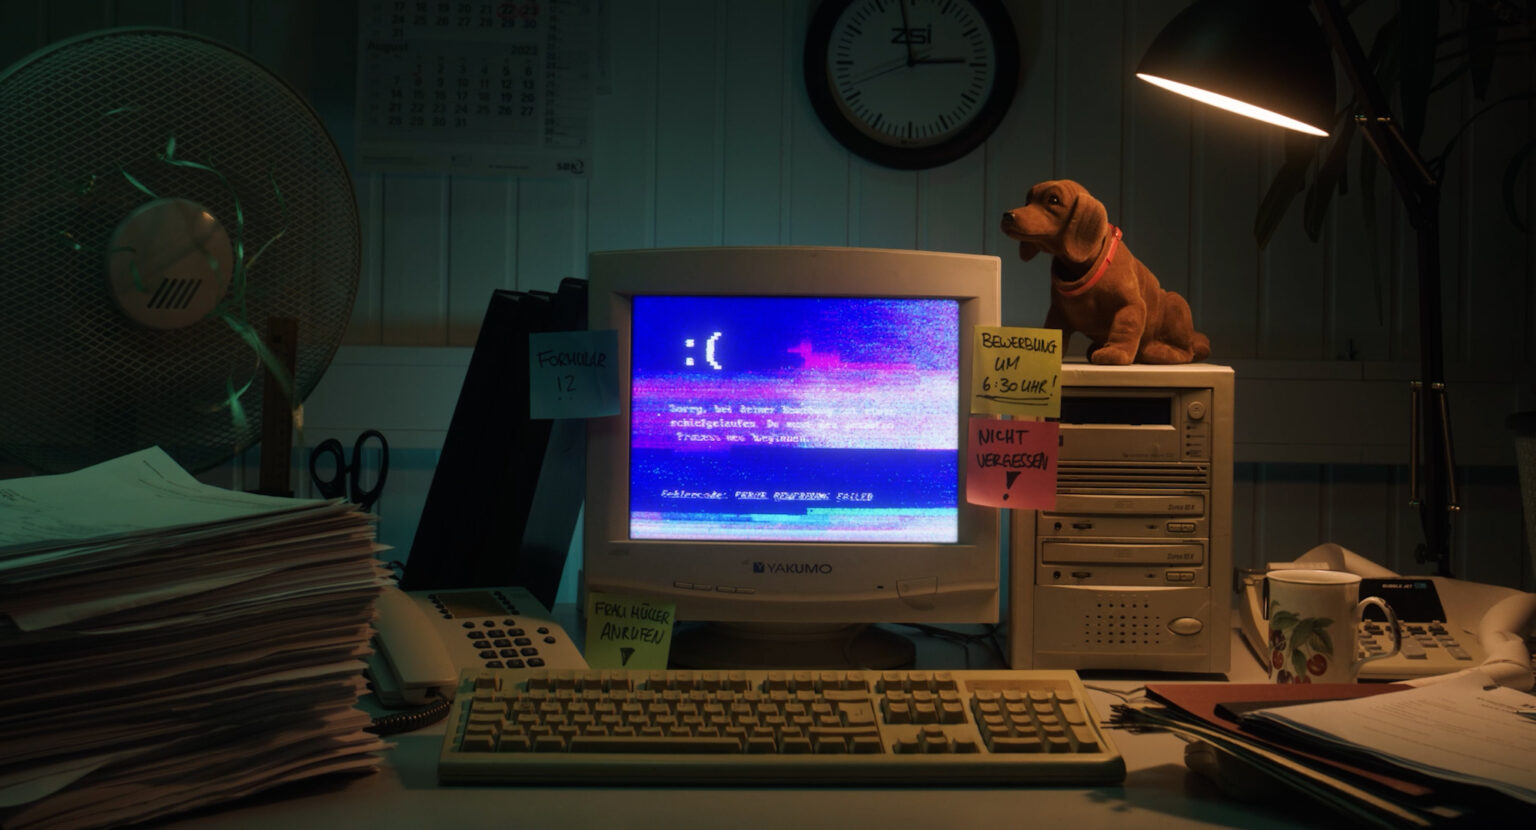 Standbild aus einer Werbung, die einen 90er-Jahre-Computer mit Bluescreen in einer Retro-Büroatmosphäre zeigt.